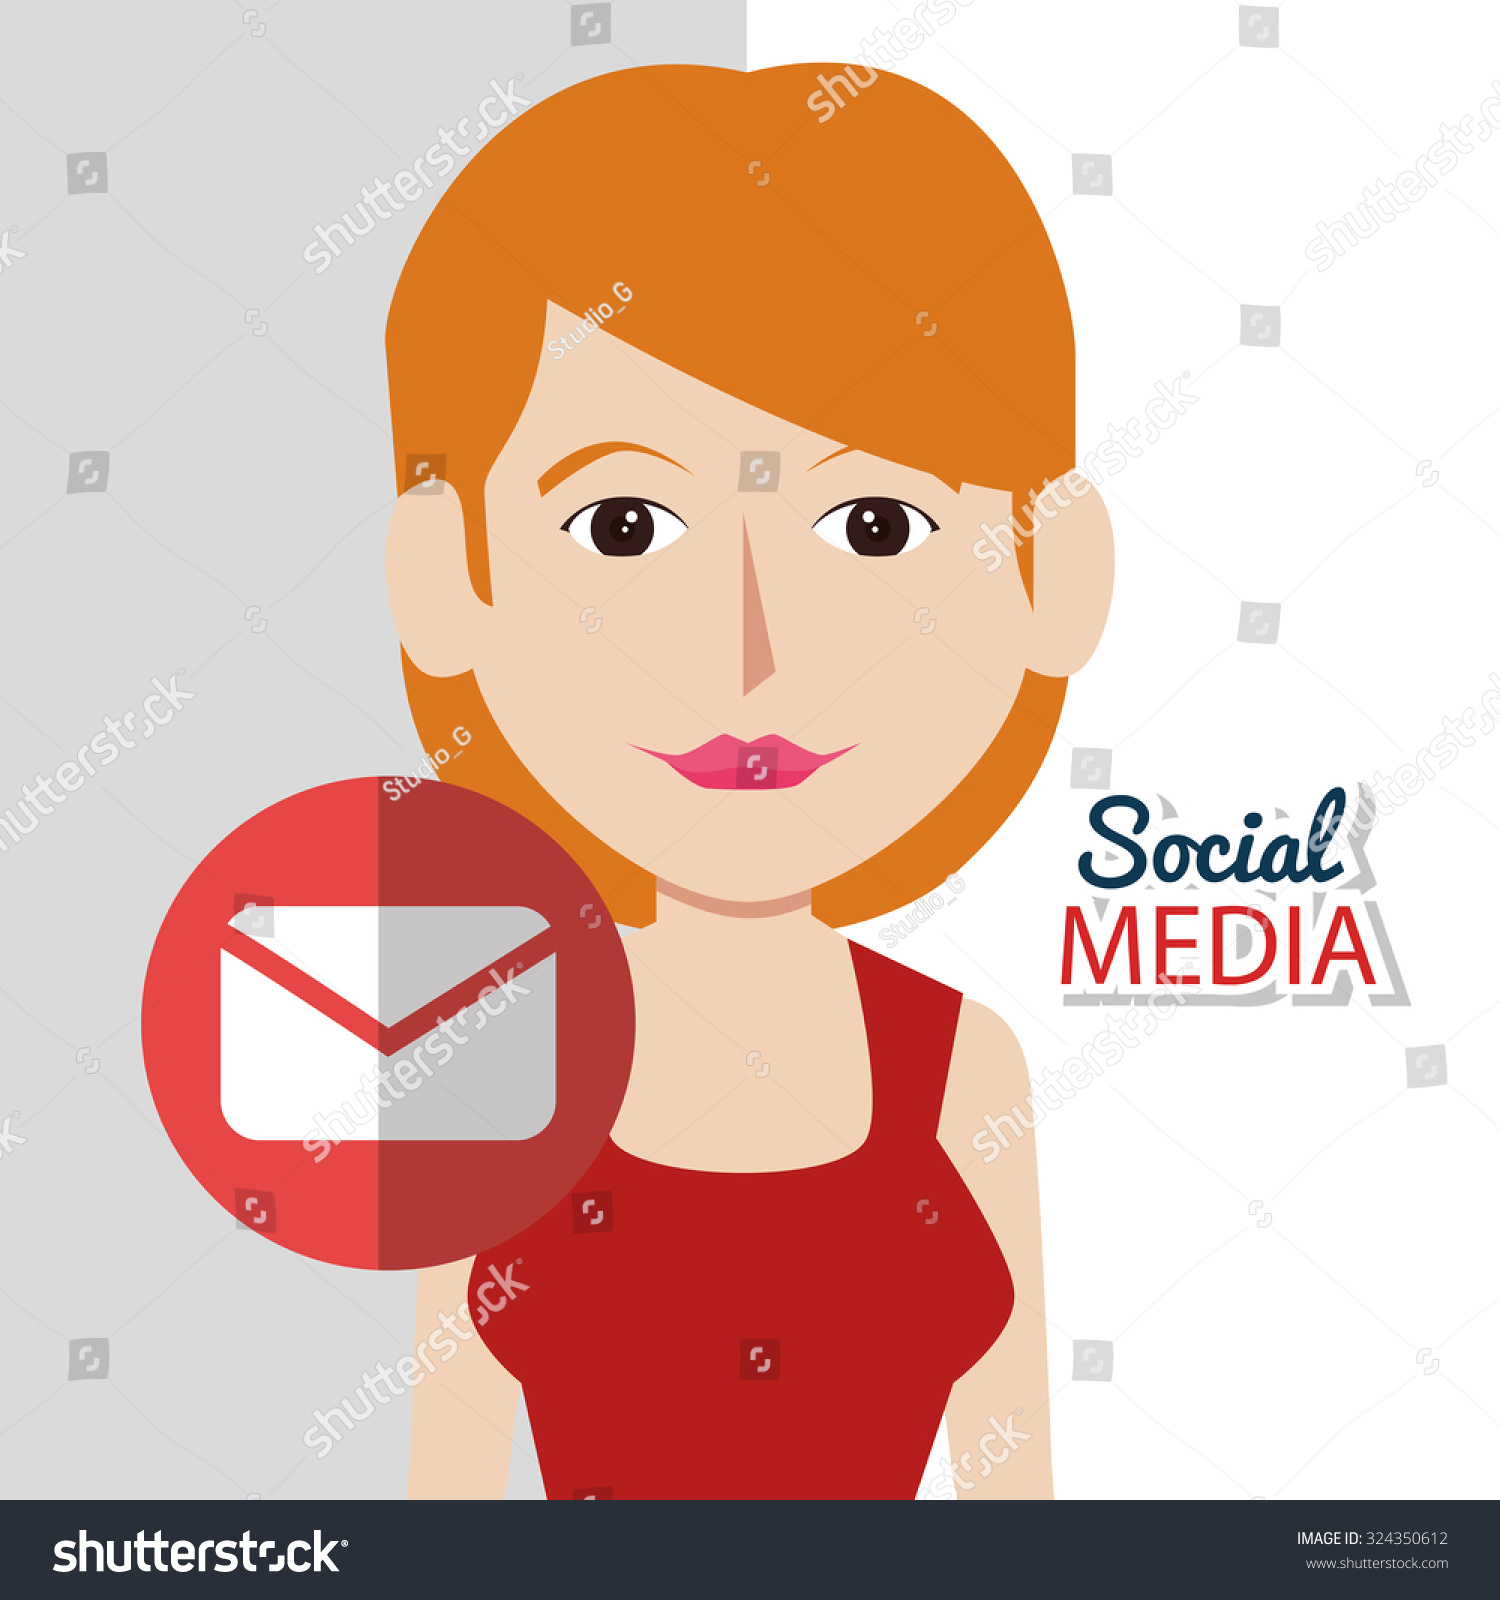 Social Media Icons Design Vector Illustration Stock Vector Royalty